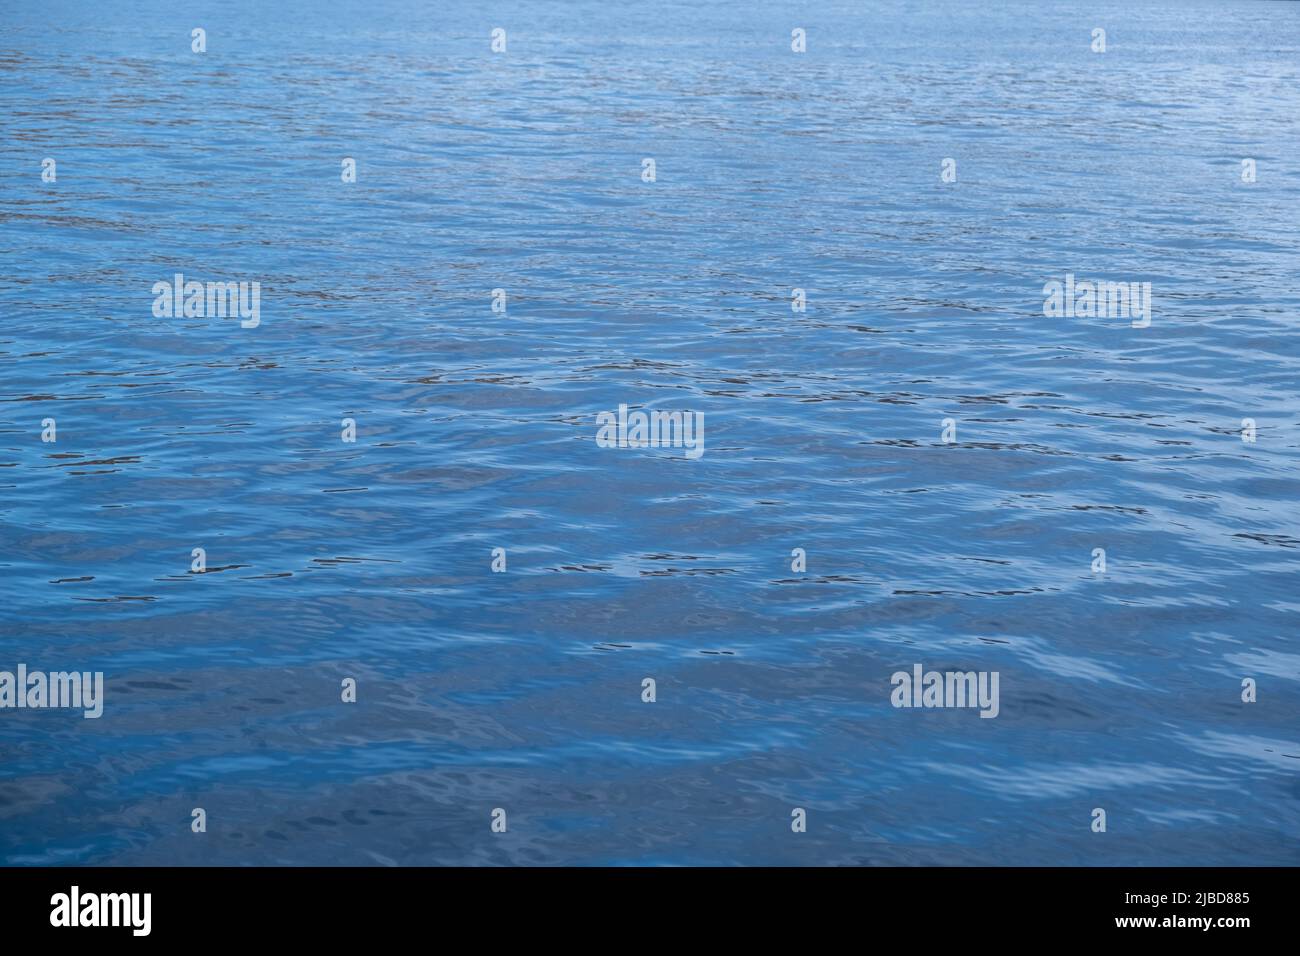 Océan, mer surface d'eau calme avec de petites ondulations. Arrière-plan bleu foncé. Mer Egée, Méditerranée Banque D'Images